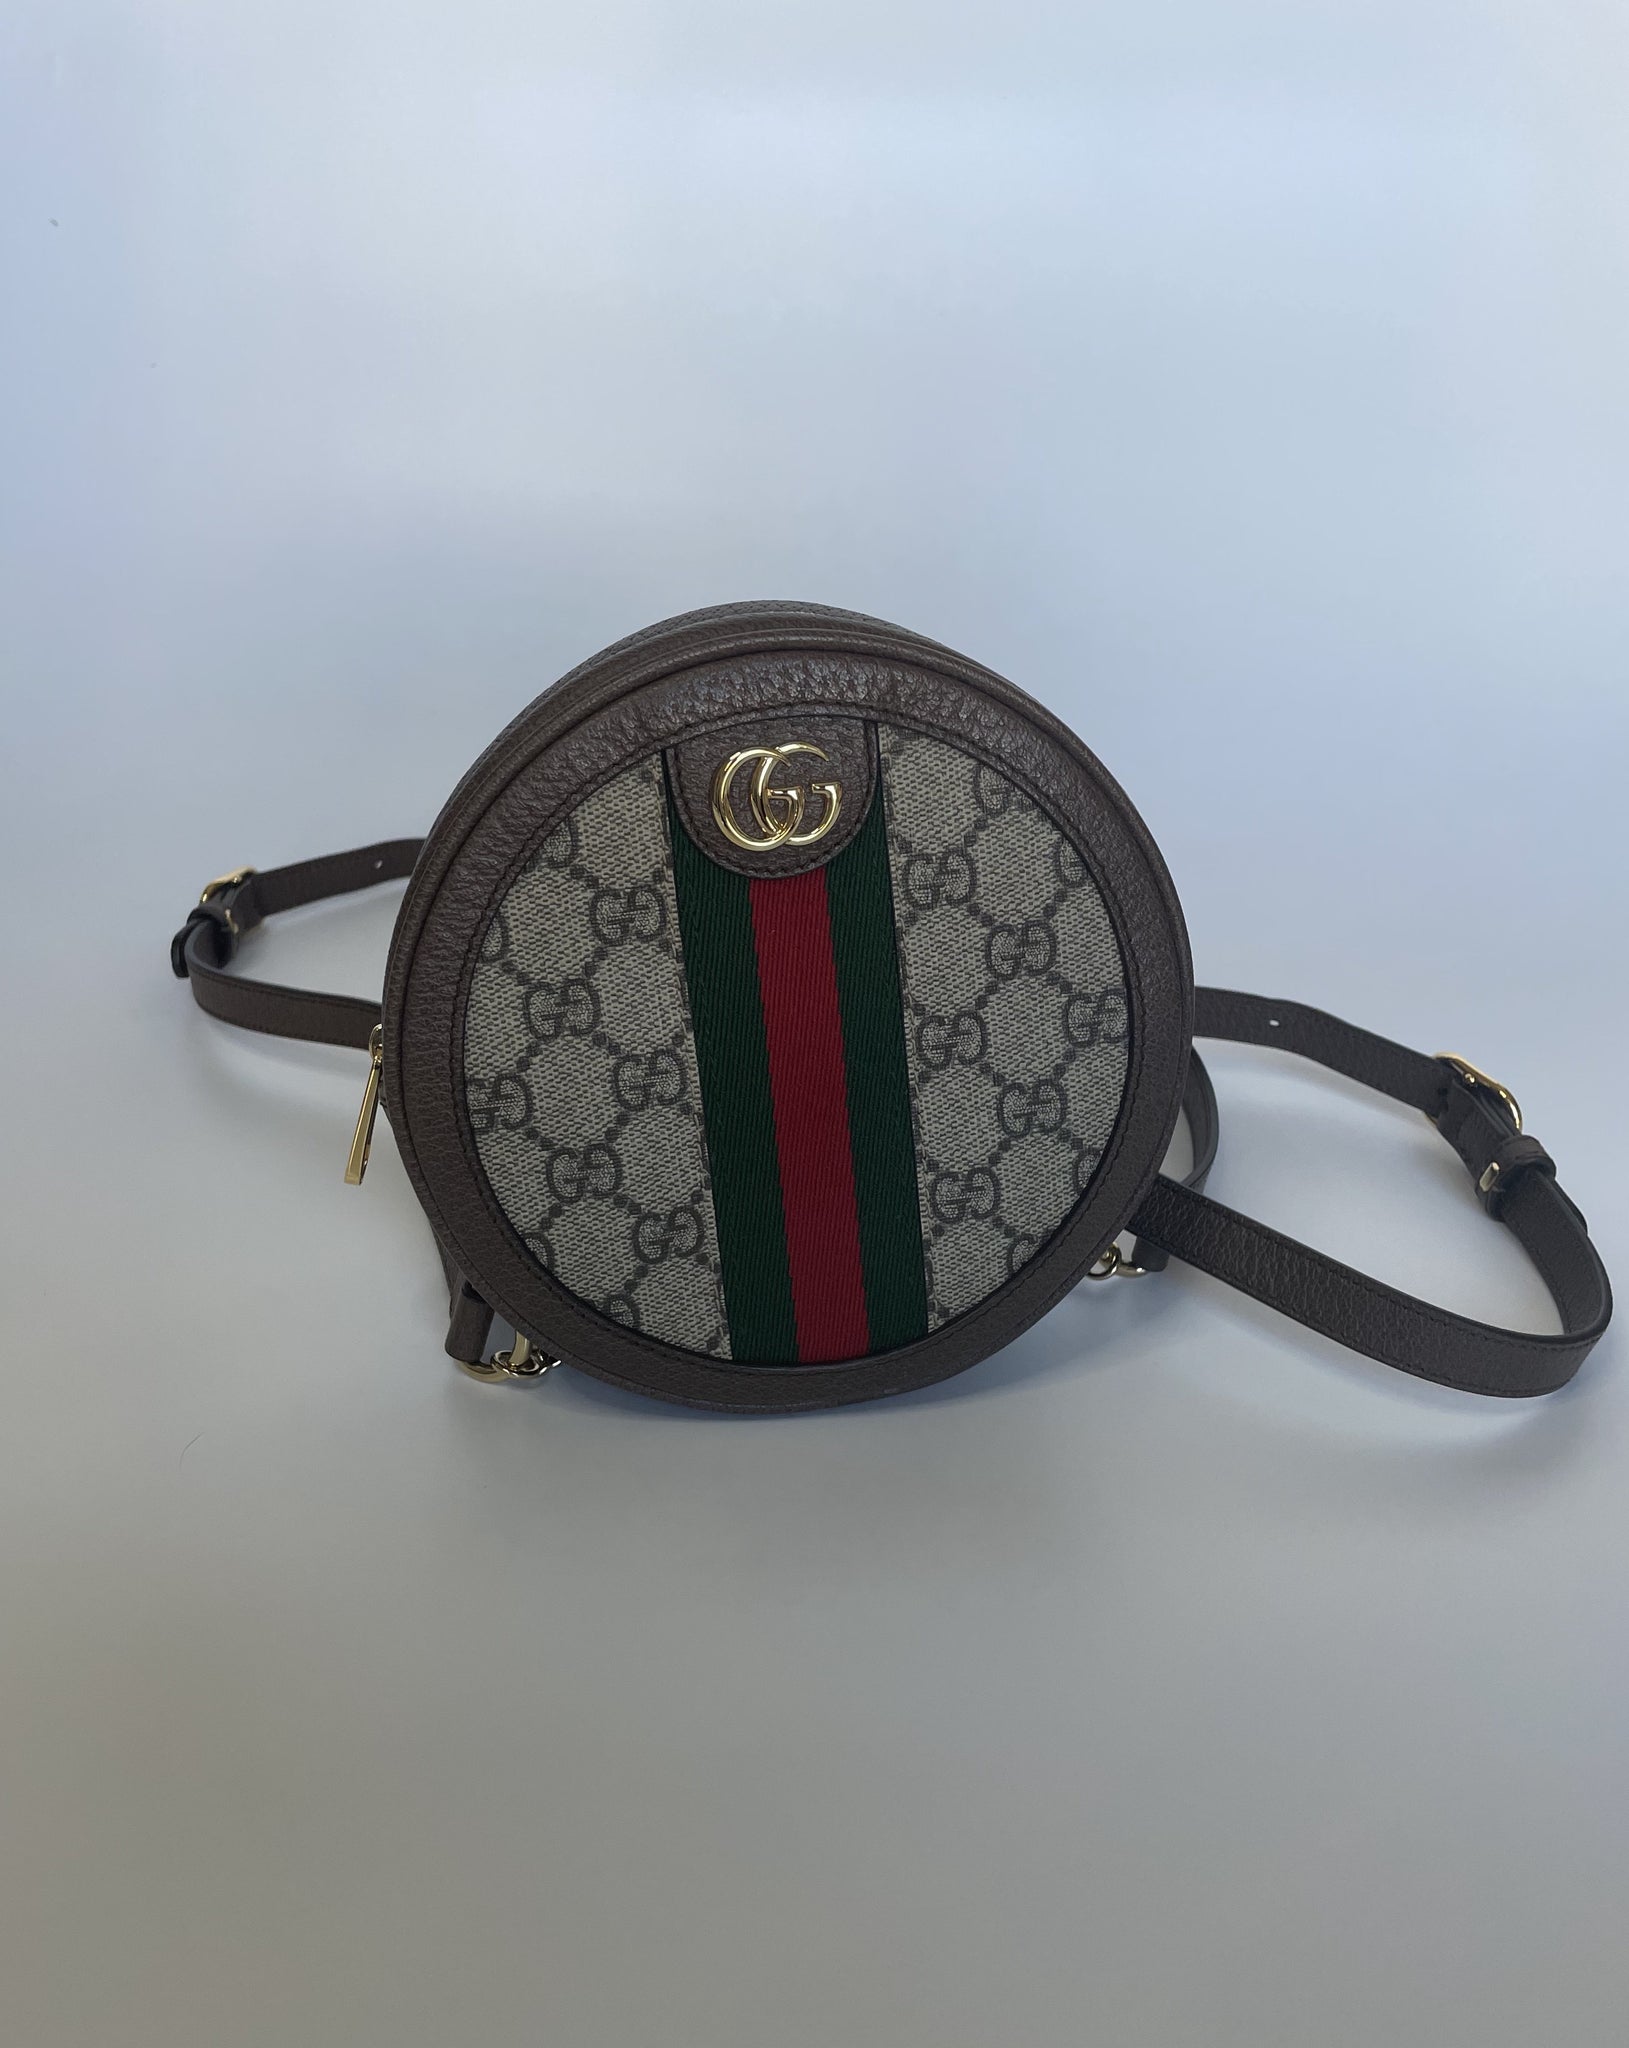 Gucci Mini Ophidia GG Supreme Luggage